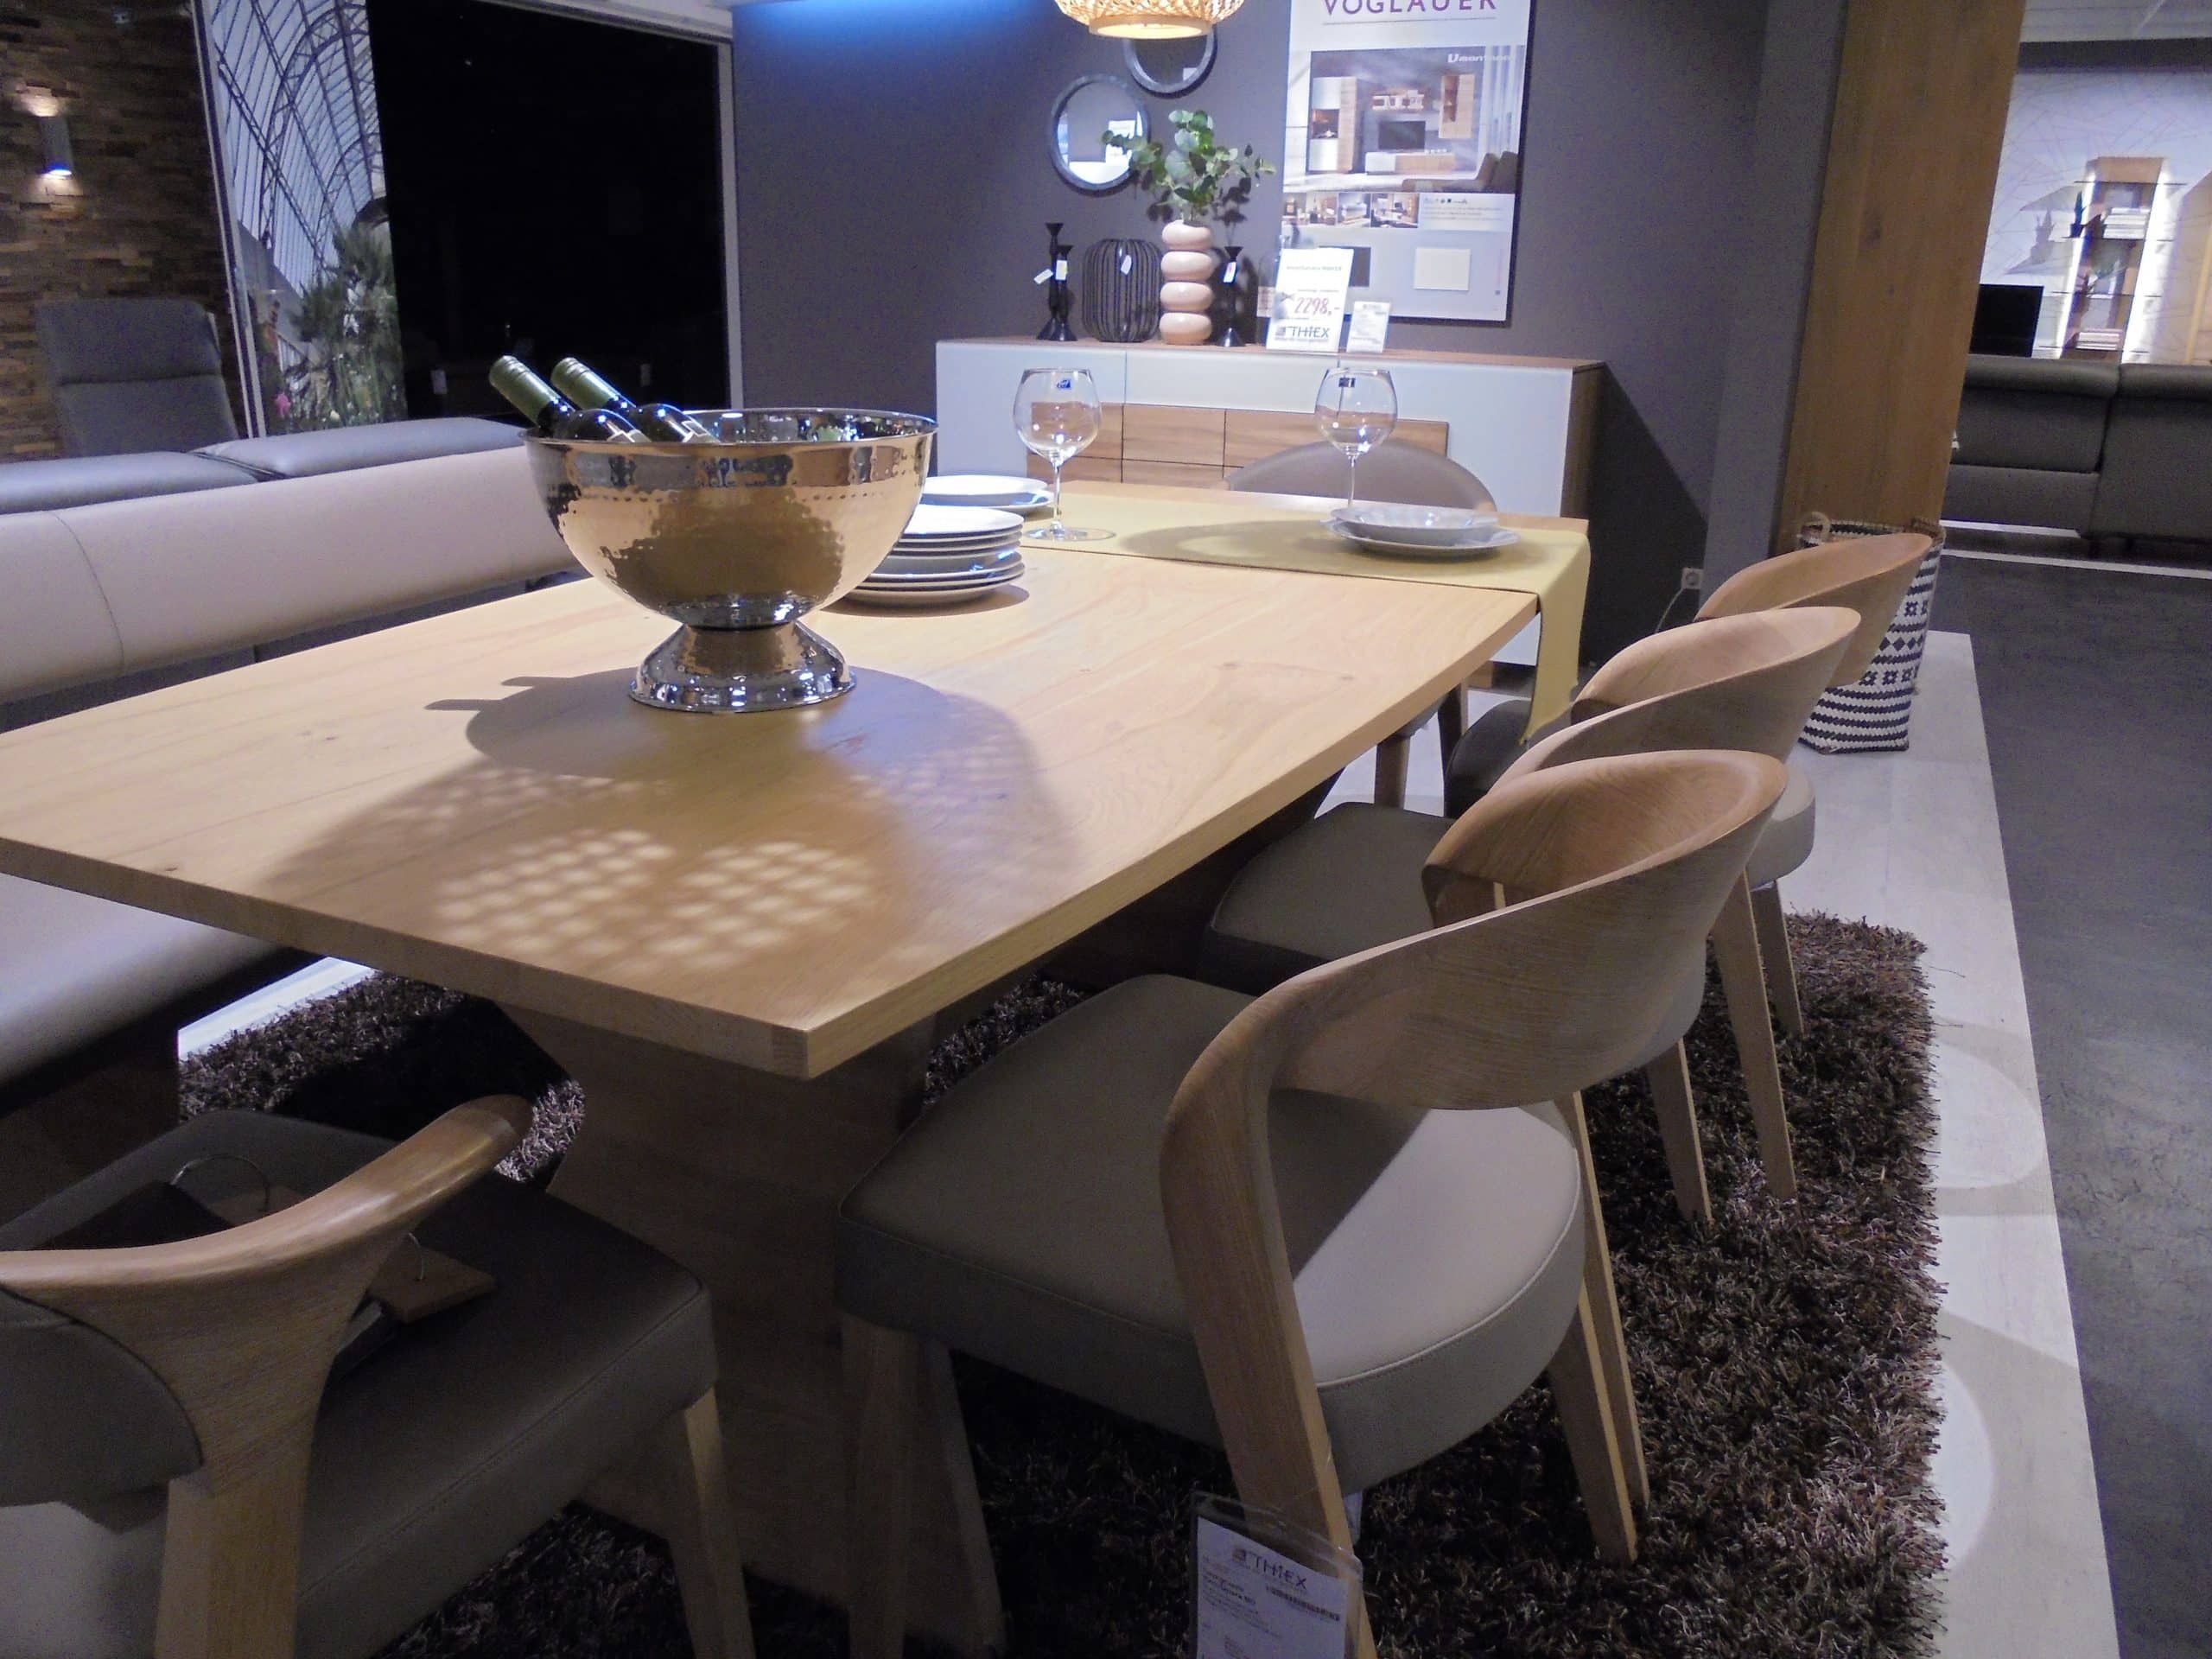 Im Möbelhaus Thiex gibt es derzeit einen Abverkauf der Tischgruppe Vmontanara in wildeiche teilmassiv geölt mit Lederbezug. Die Tischgruppe besteht aus einer Bank, einem Tisch mit Ansteckplatte, 3 Stühlen und 2 Armlehnstühlen. Die gesamte Tischgruppe ist um 30% reduziert.